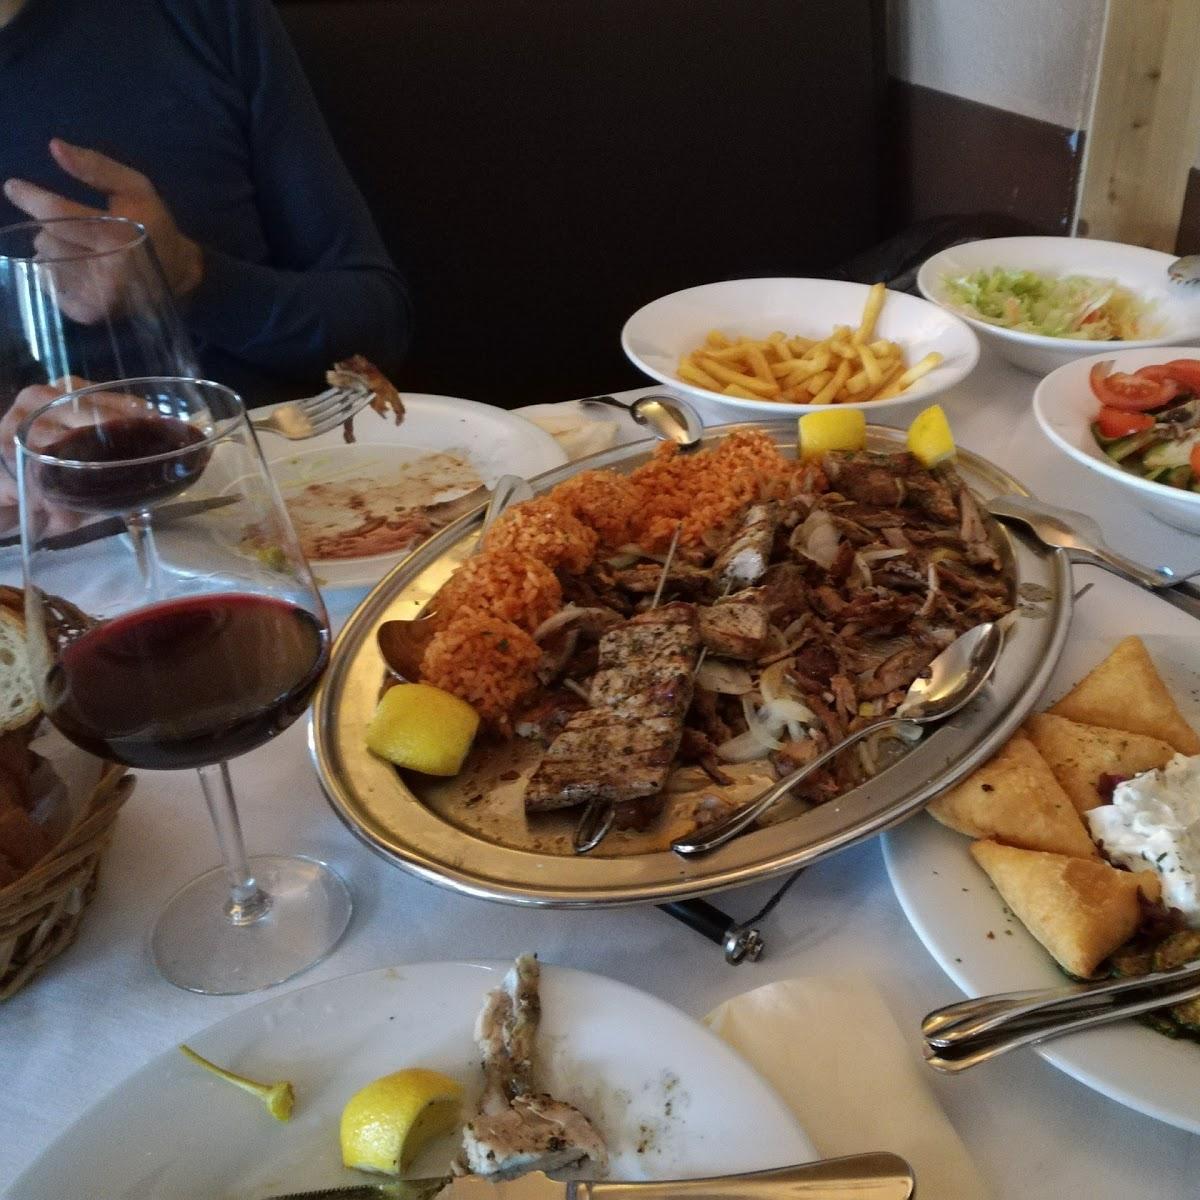 Restaurant "Mykonos" in Riesa